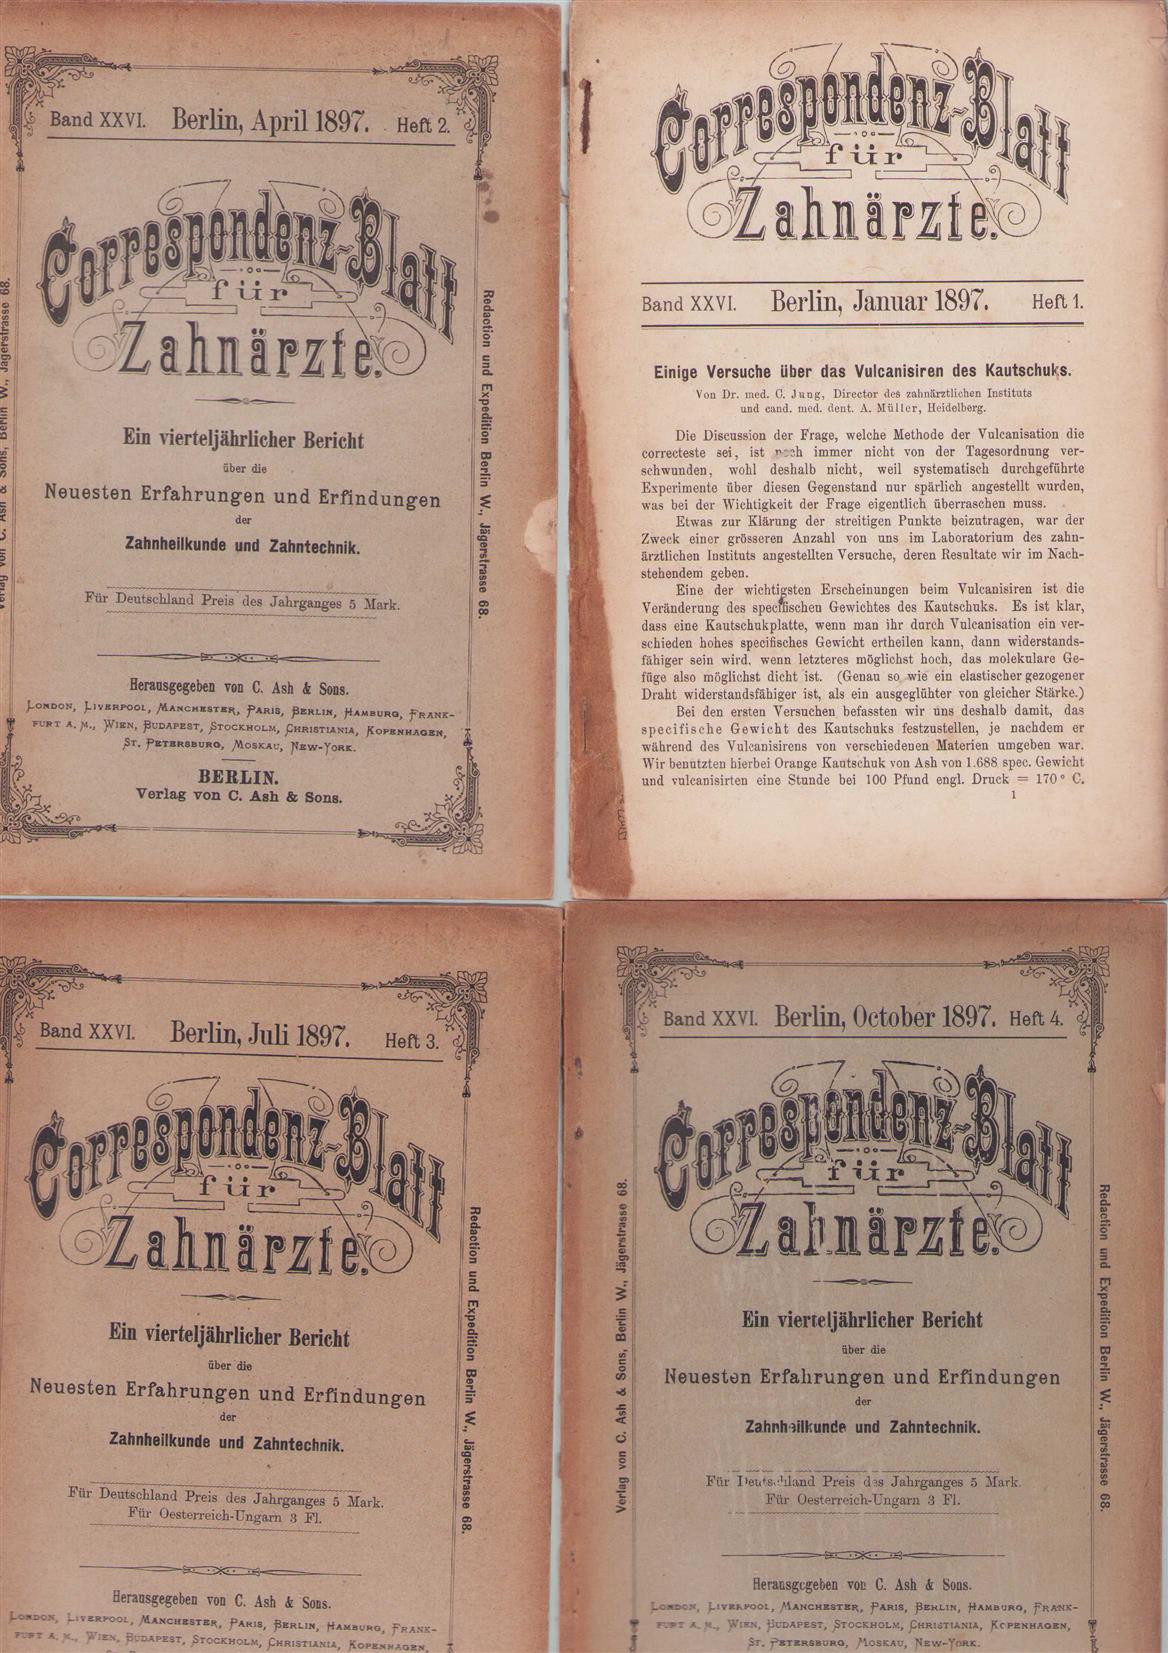 UNKNOWN AUTHOR - CORRESPONDENZ-BLATT FUR ZAHNARZTE, 1897,: ein vierteljahrlicher bericht uber die neuesten... erfahrungen und erfindungen der zahnheilkunde und.Zahntecnik